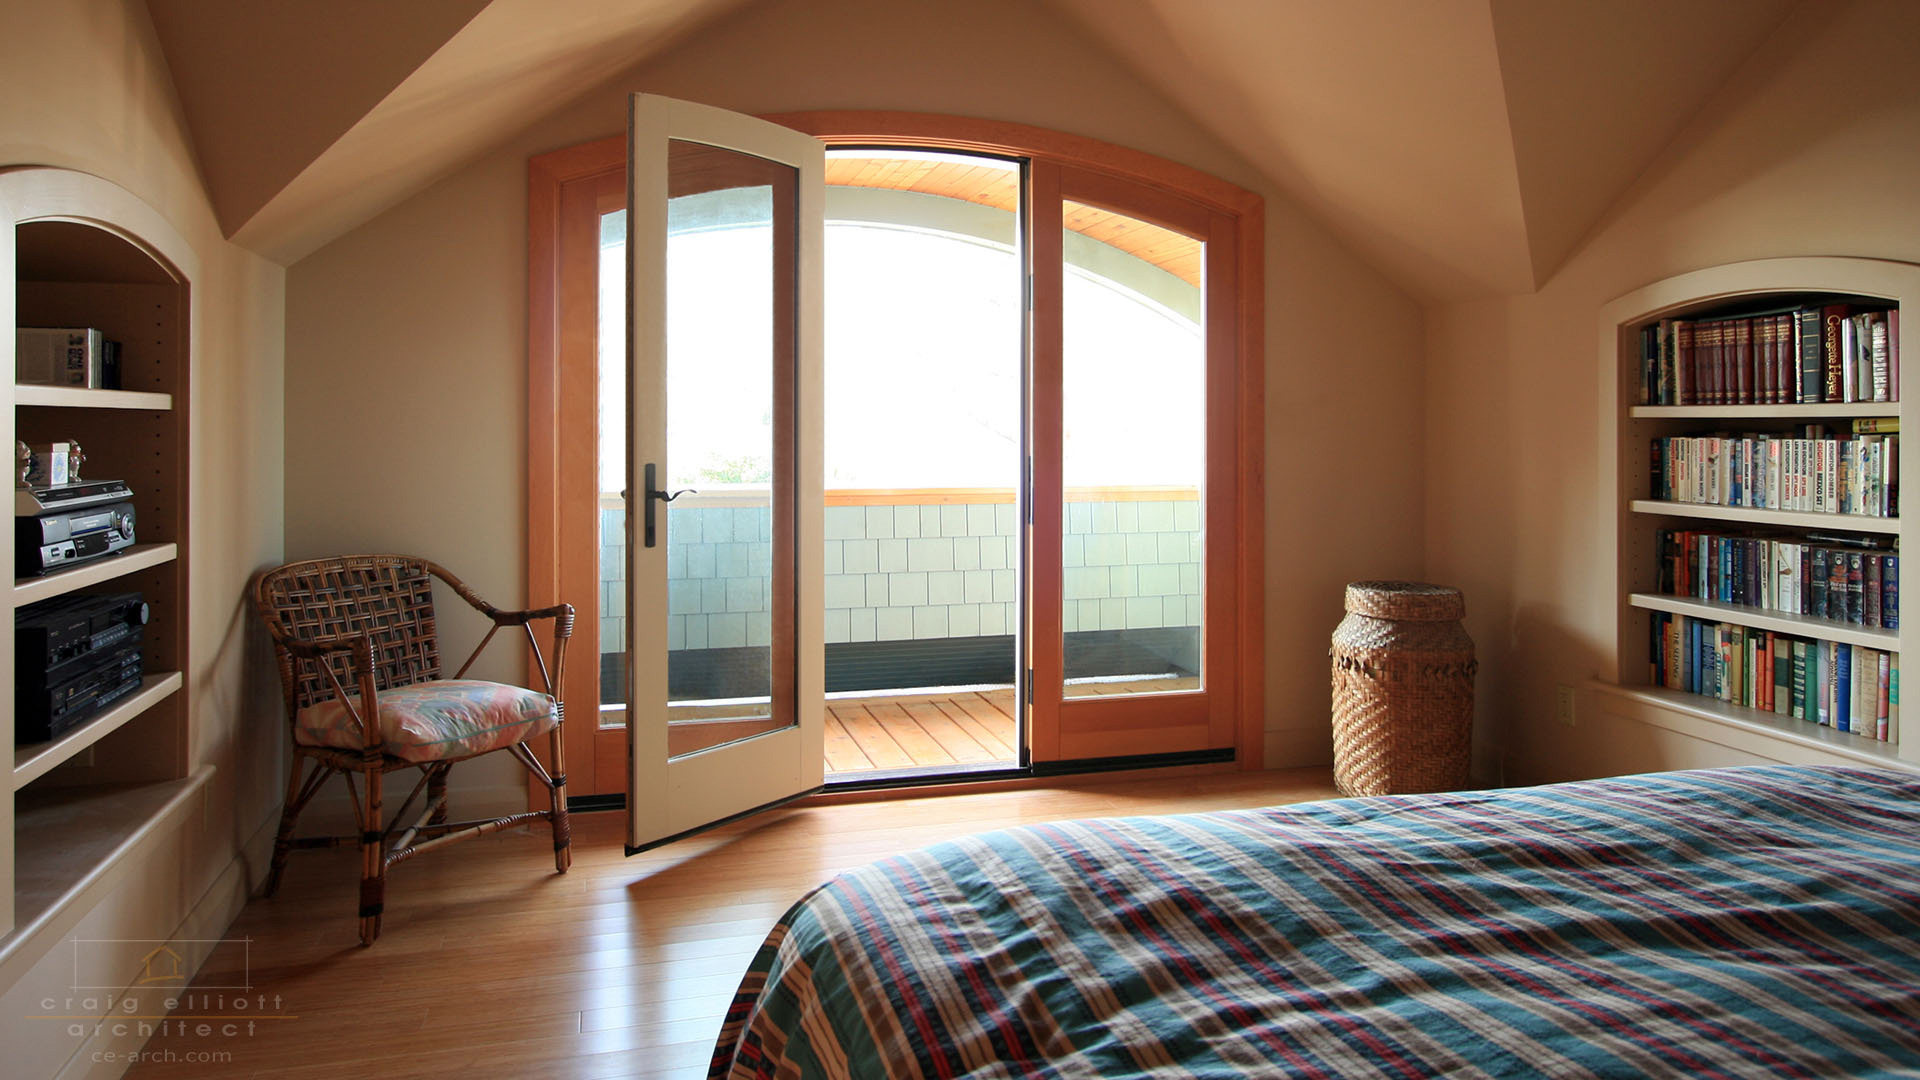 interior photos - bedroom